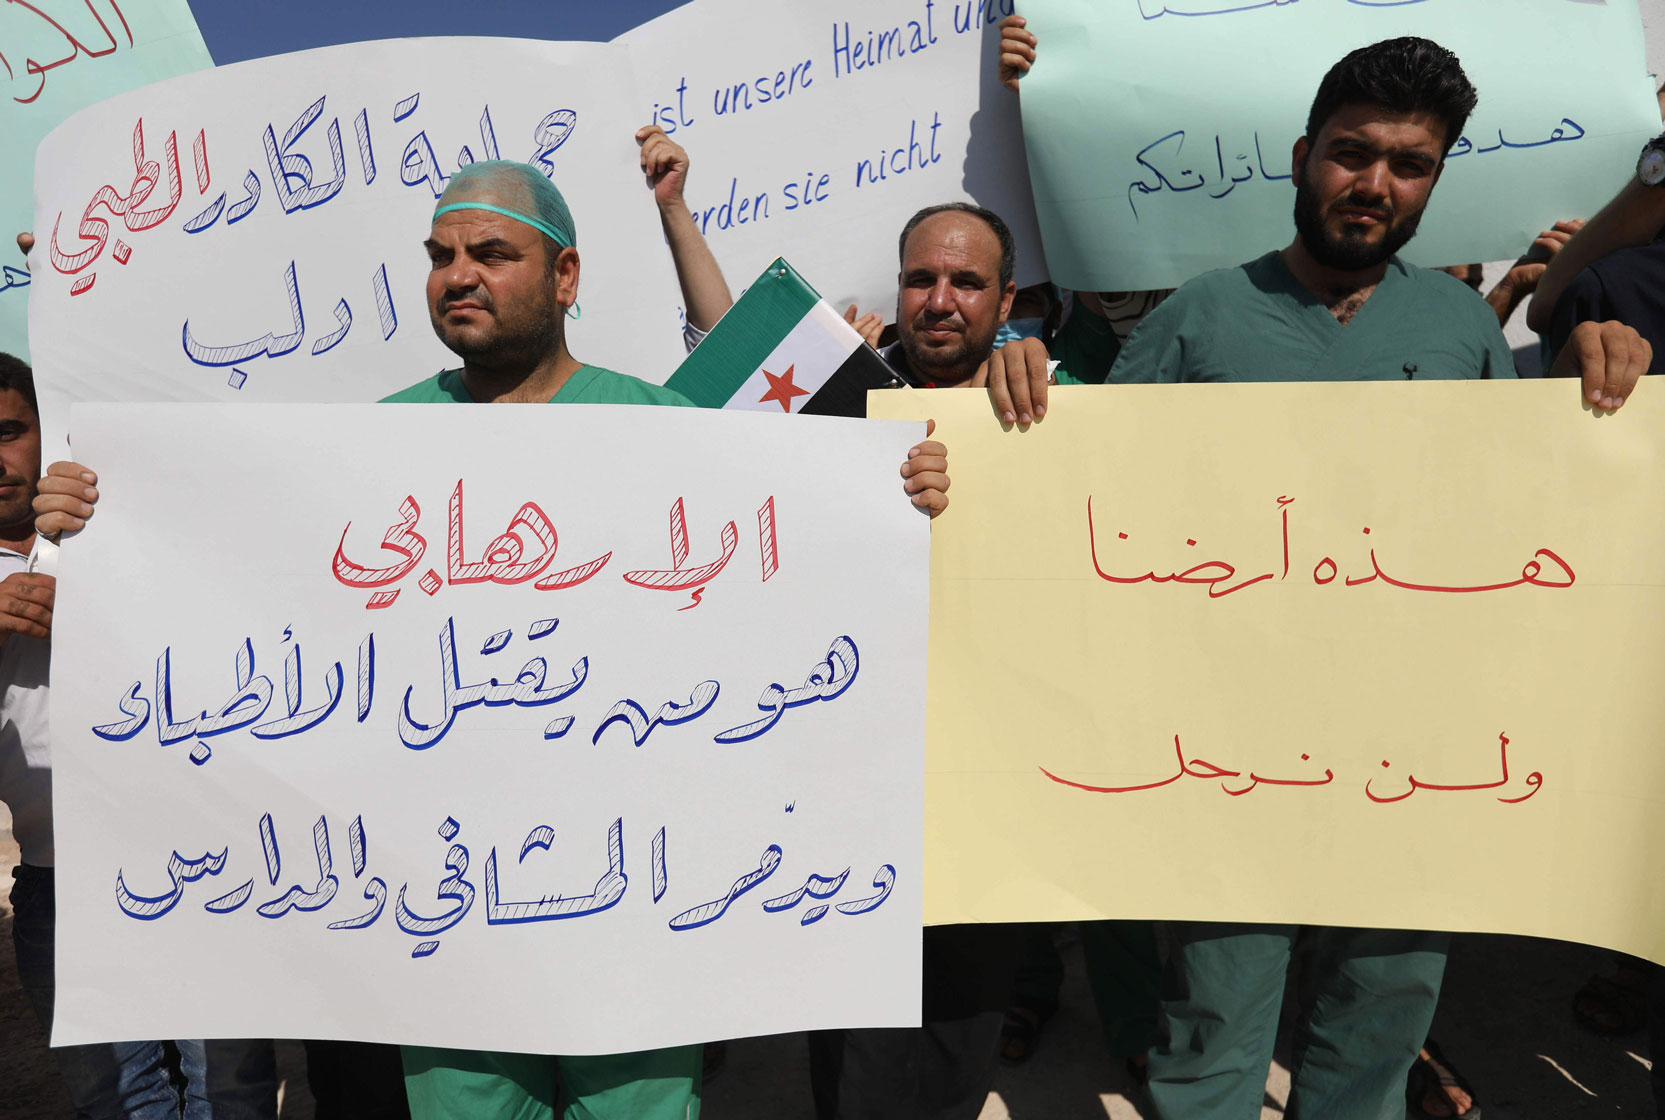 أطباء ادلب يرفضون الخروج منها رغم هستيريا القصف السوري